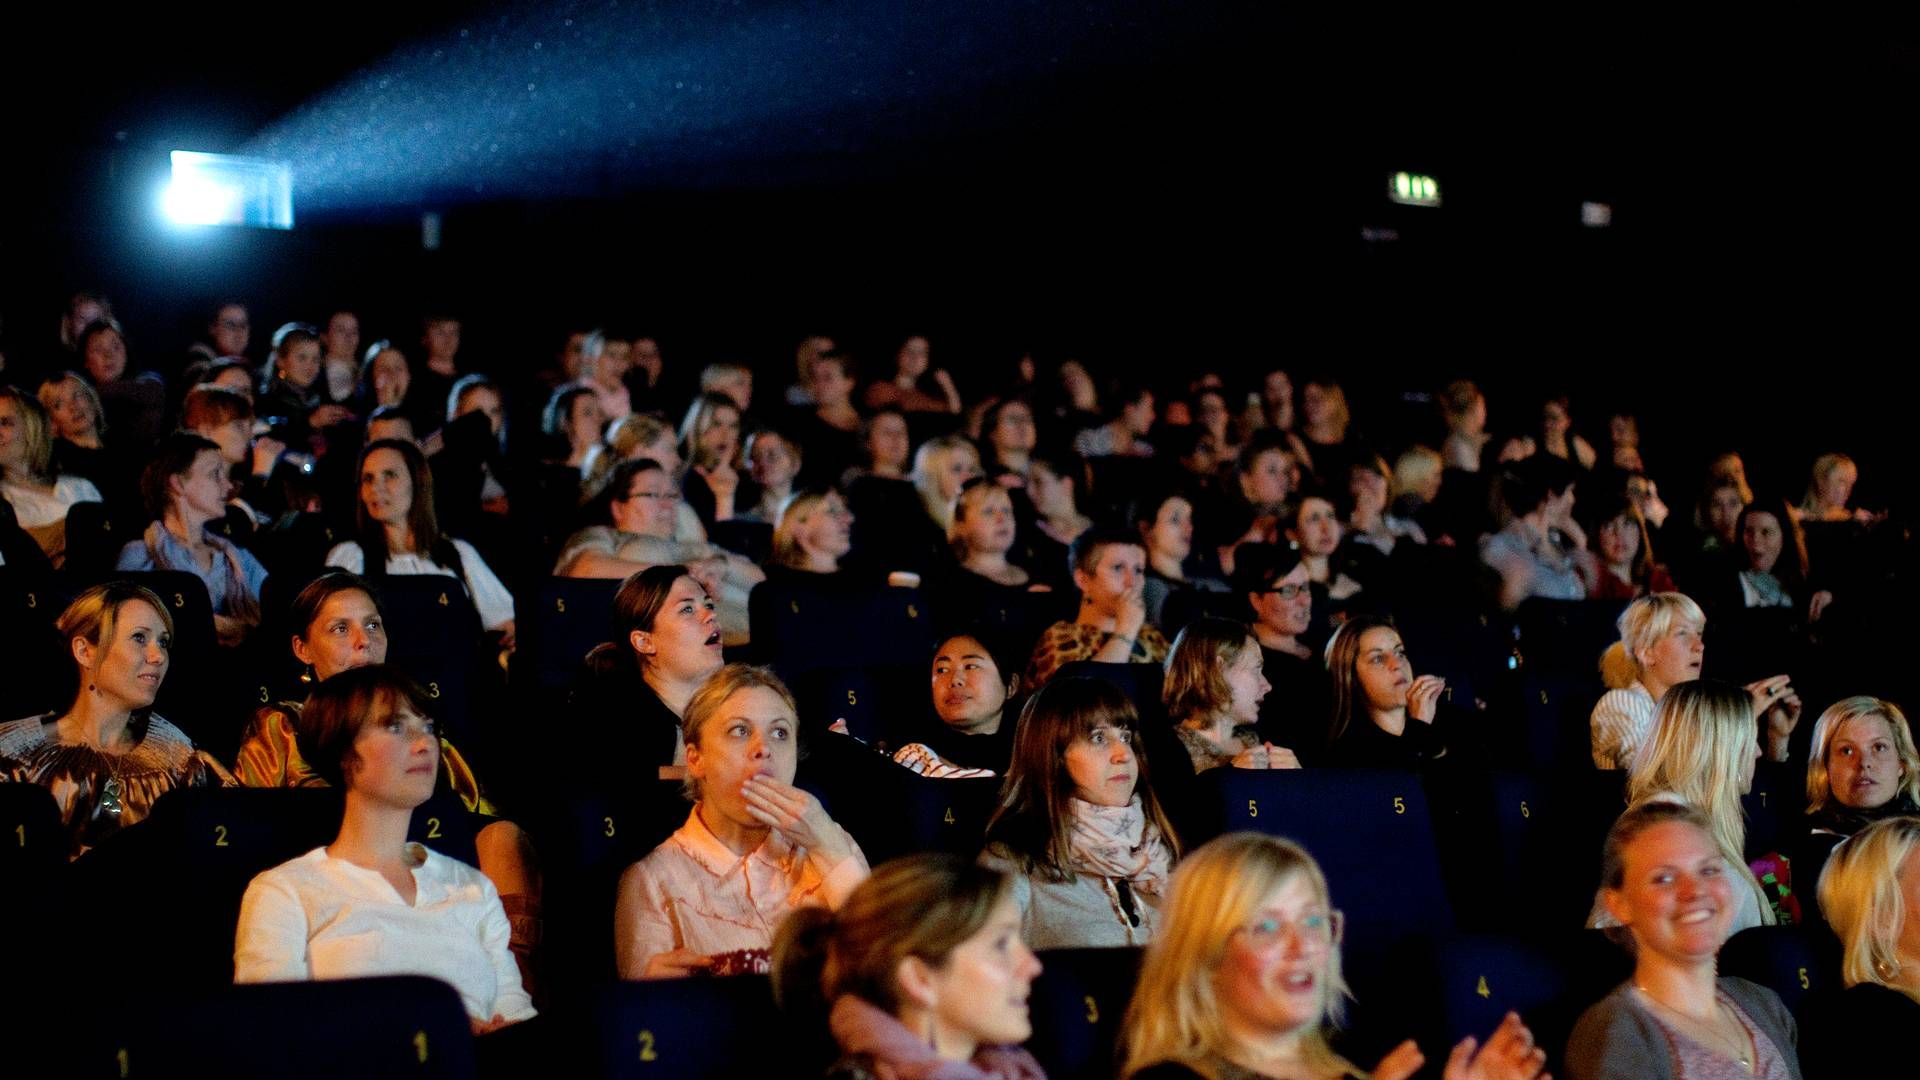 Ung filmfestival kan i år opleves i to biografer i København. | Foto: Peter Hove Olesen